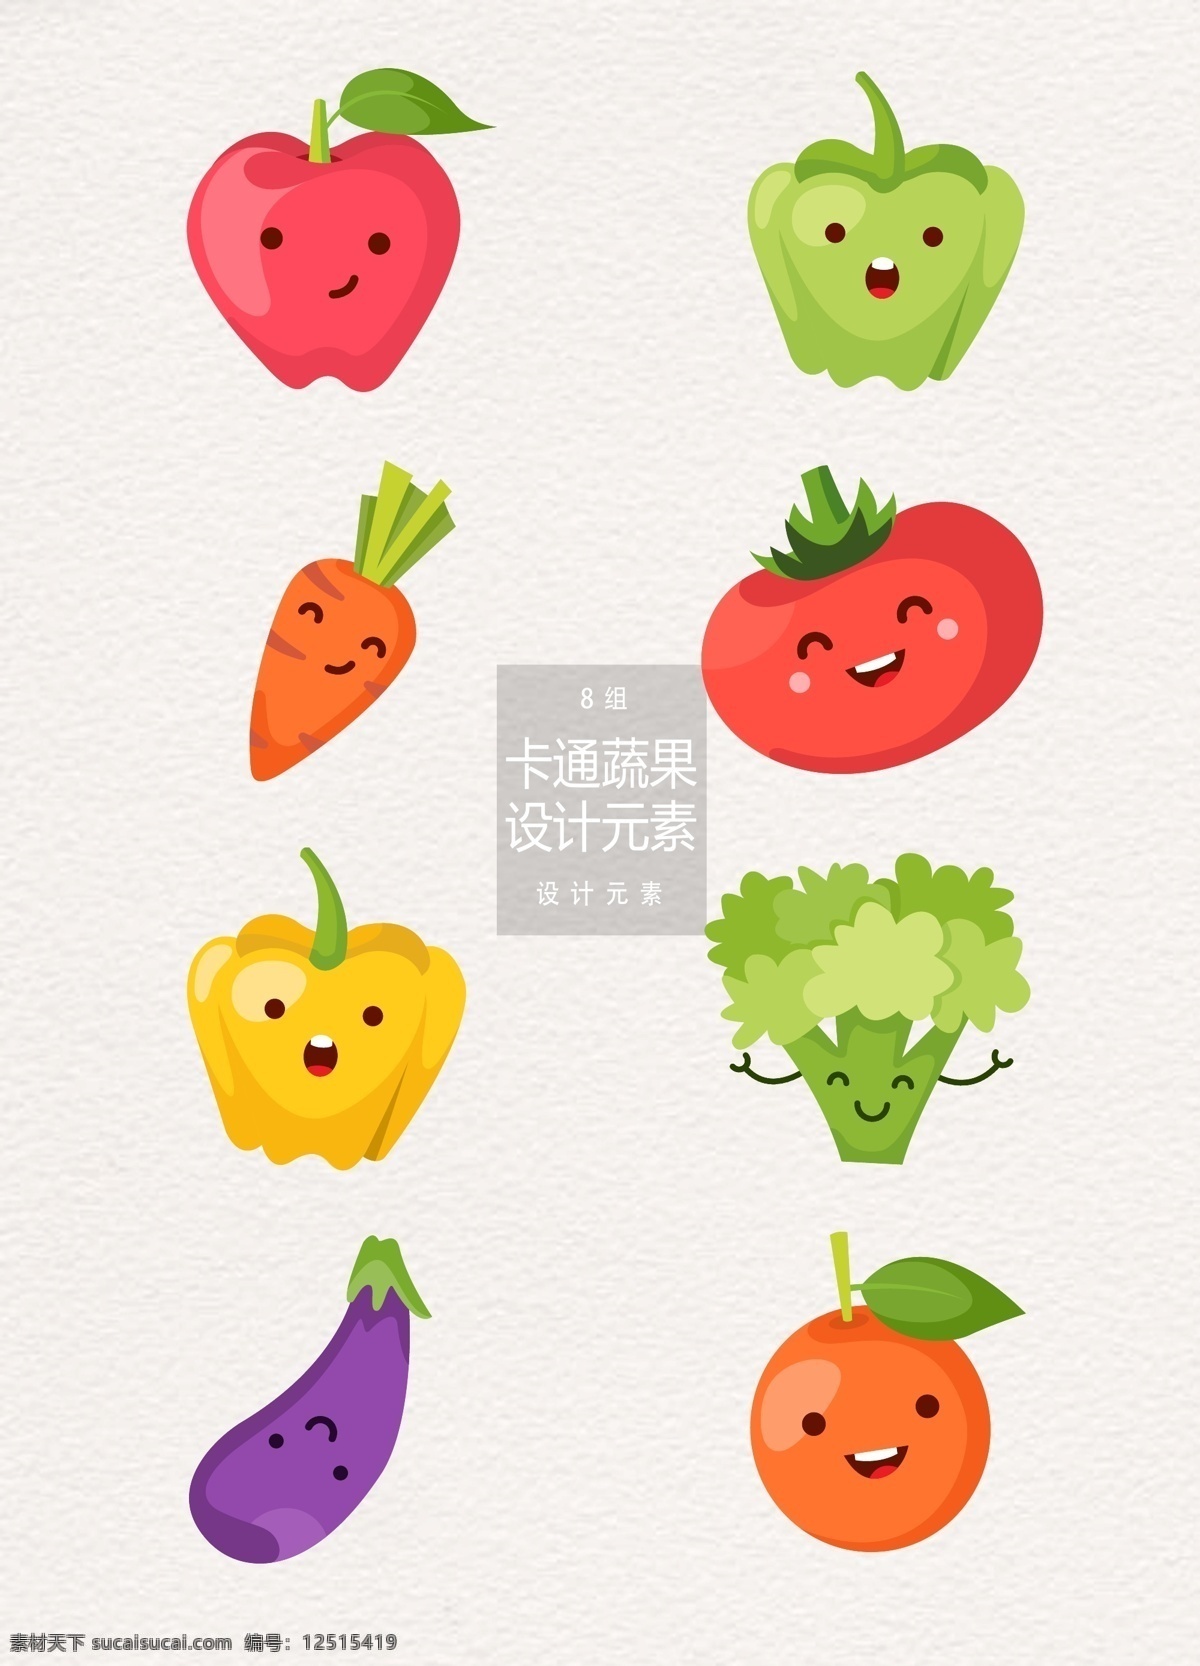 卡通 蔬果 元素 设计元素 蔬菜 苹果 辣椒 橙子 卡通蔬果 蔬果元素 水果 萝卜 西红柿 番茄 菜花 茄子